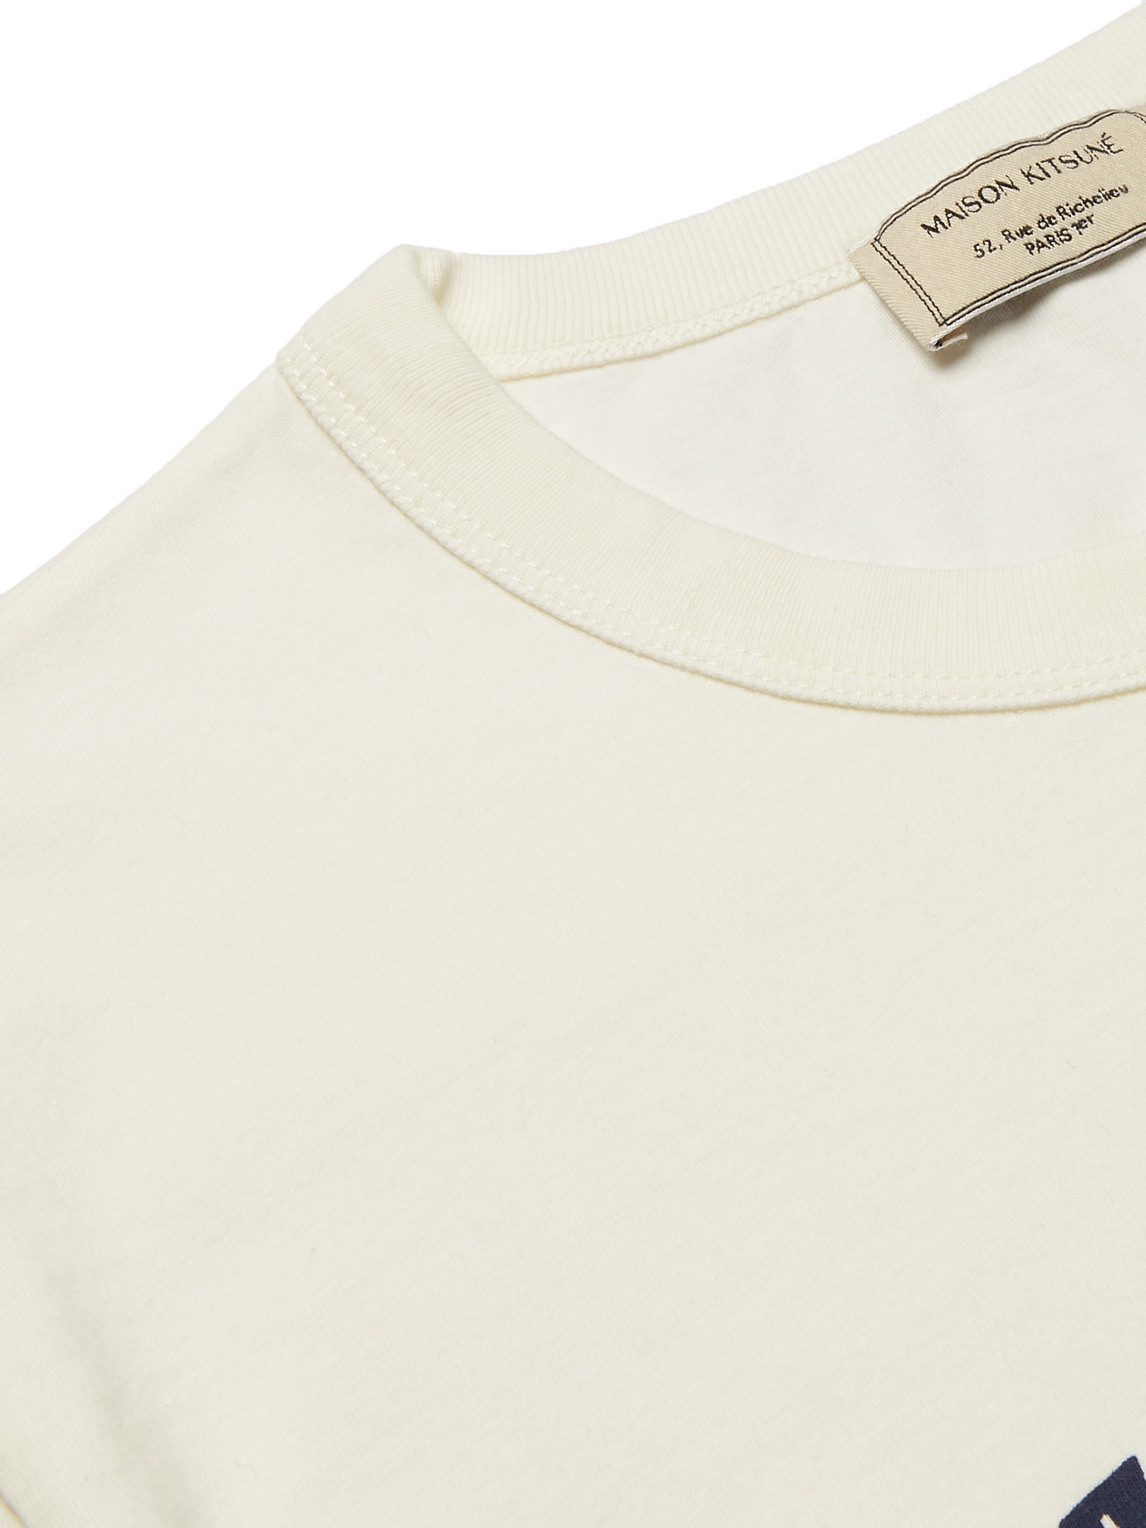 Shop Maison Kitsuné Logo-print Cotton-jersey T-shirt In White